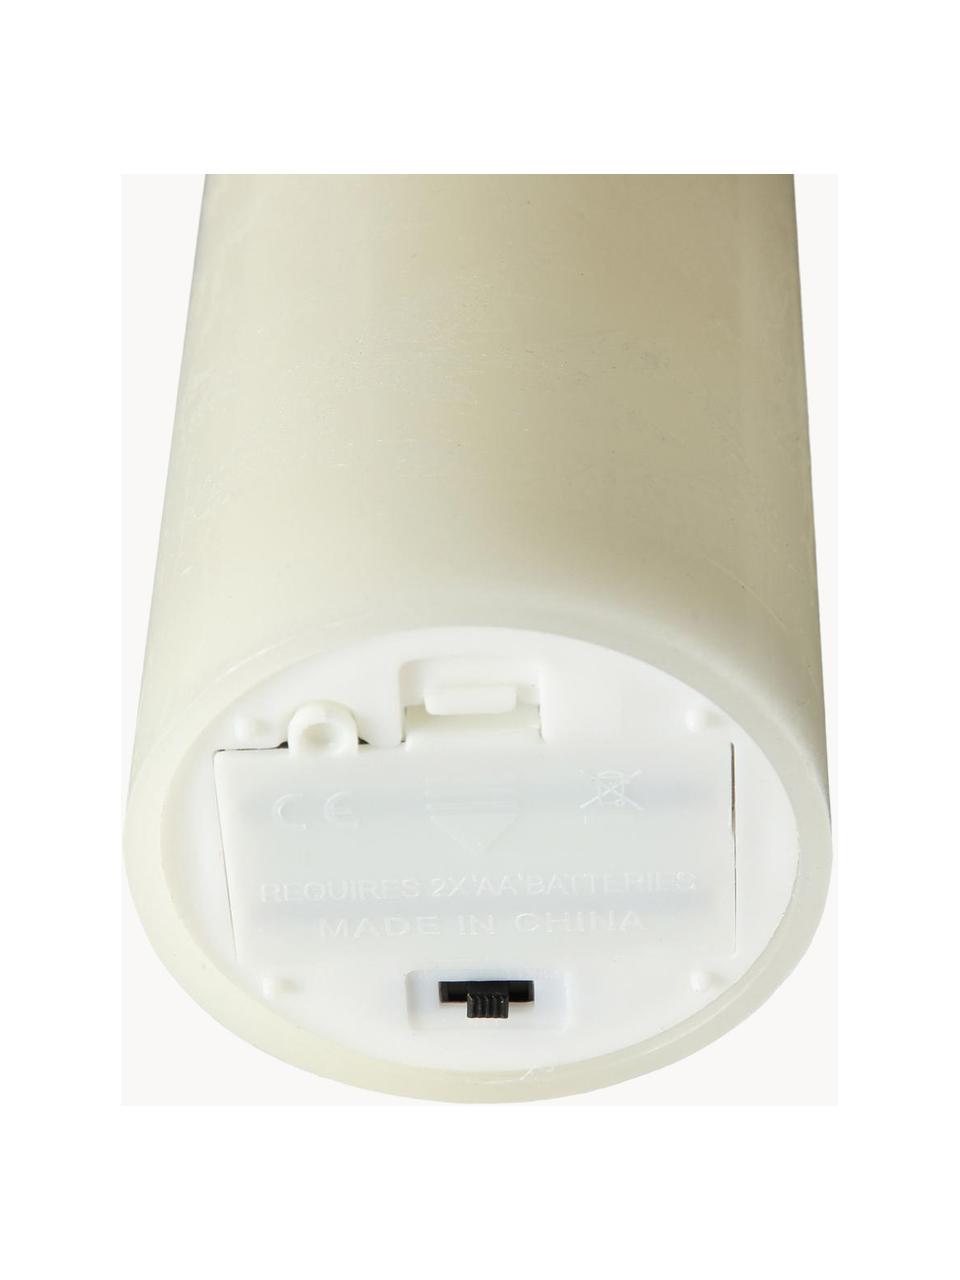 Candela a LED con funzione tremolante Bino, alt. 12 cm, Bianco crema, Ø 8 x Alt. 12 cm